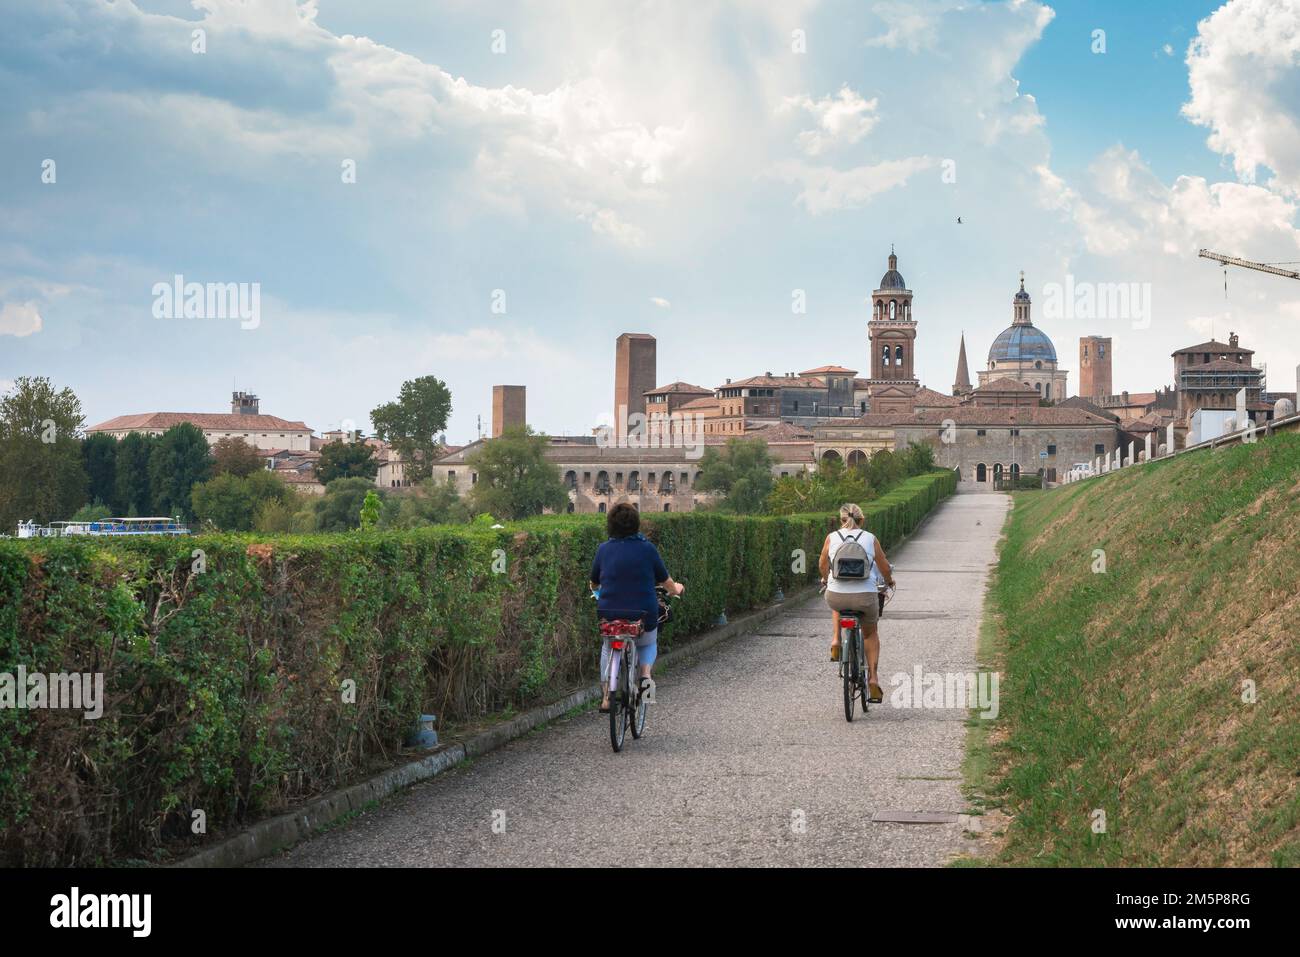 Cyclisme Italie, vue arrière en été de deux femmes en vélo vers la ville pittoresque de Mantoue (Mantova) à l'époque de la Renaissance en Lombardie, Italie Banque D'Images